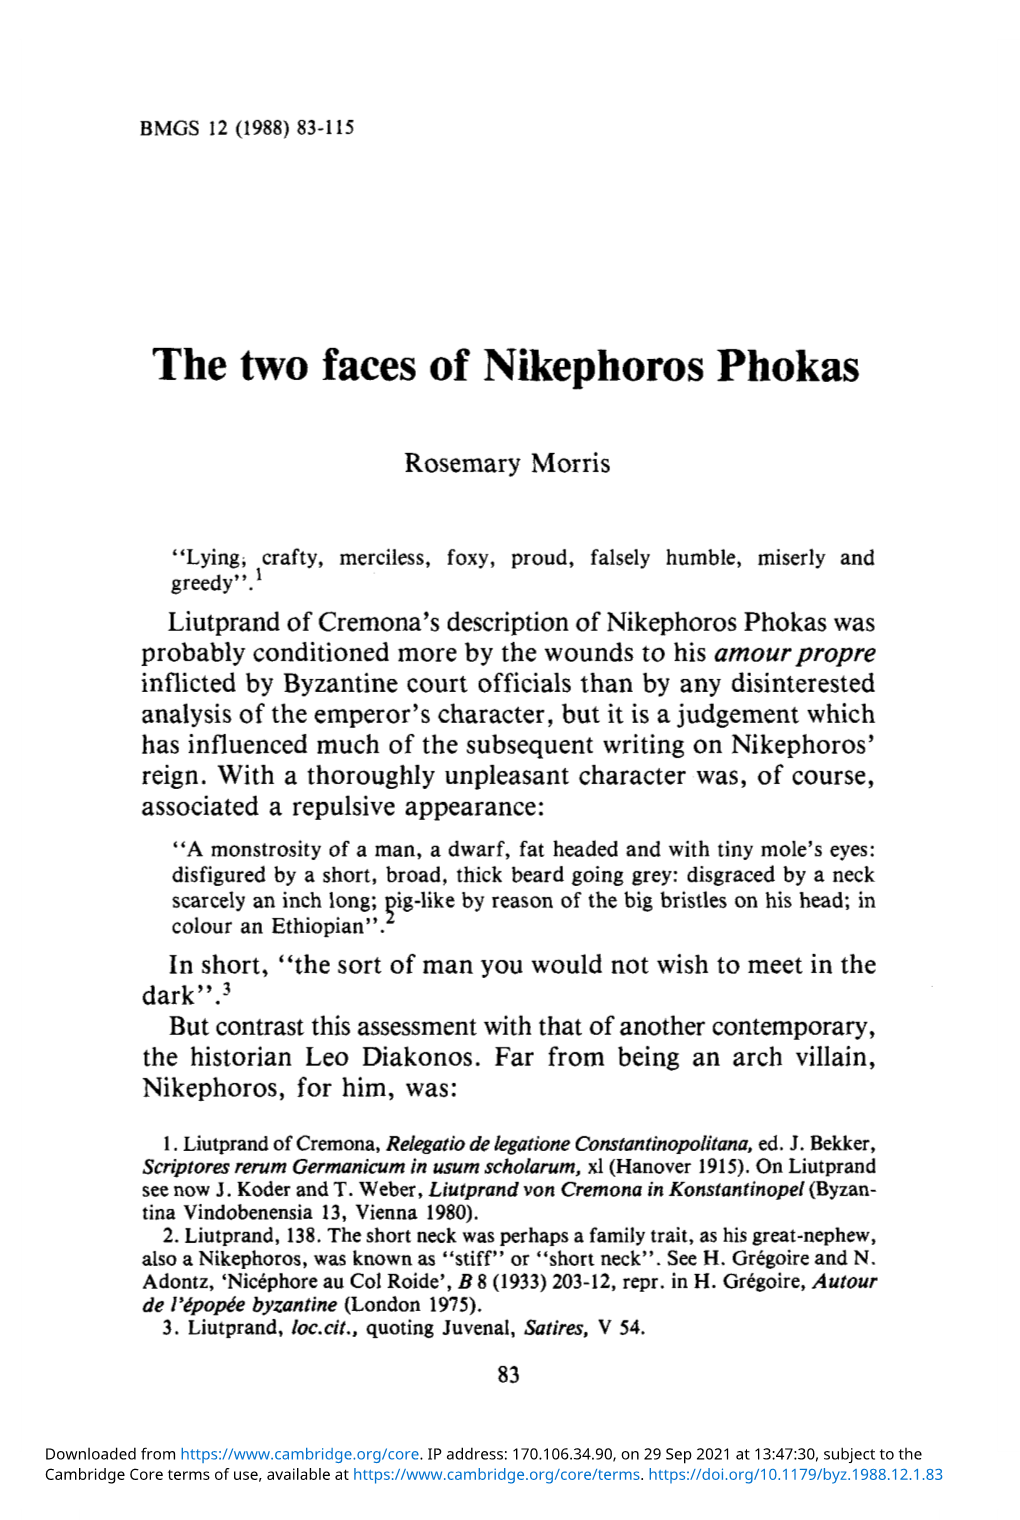 The Two Faces of Nikephoros Phokas